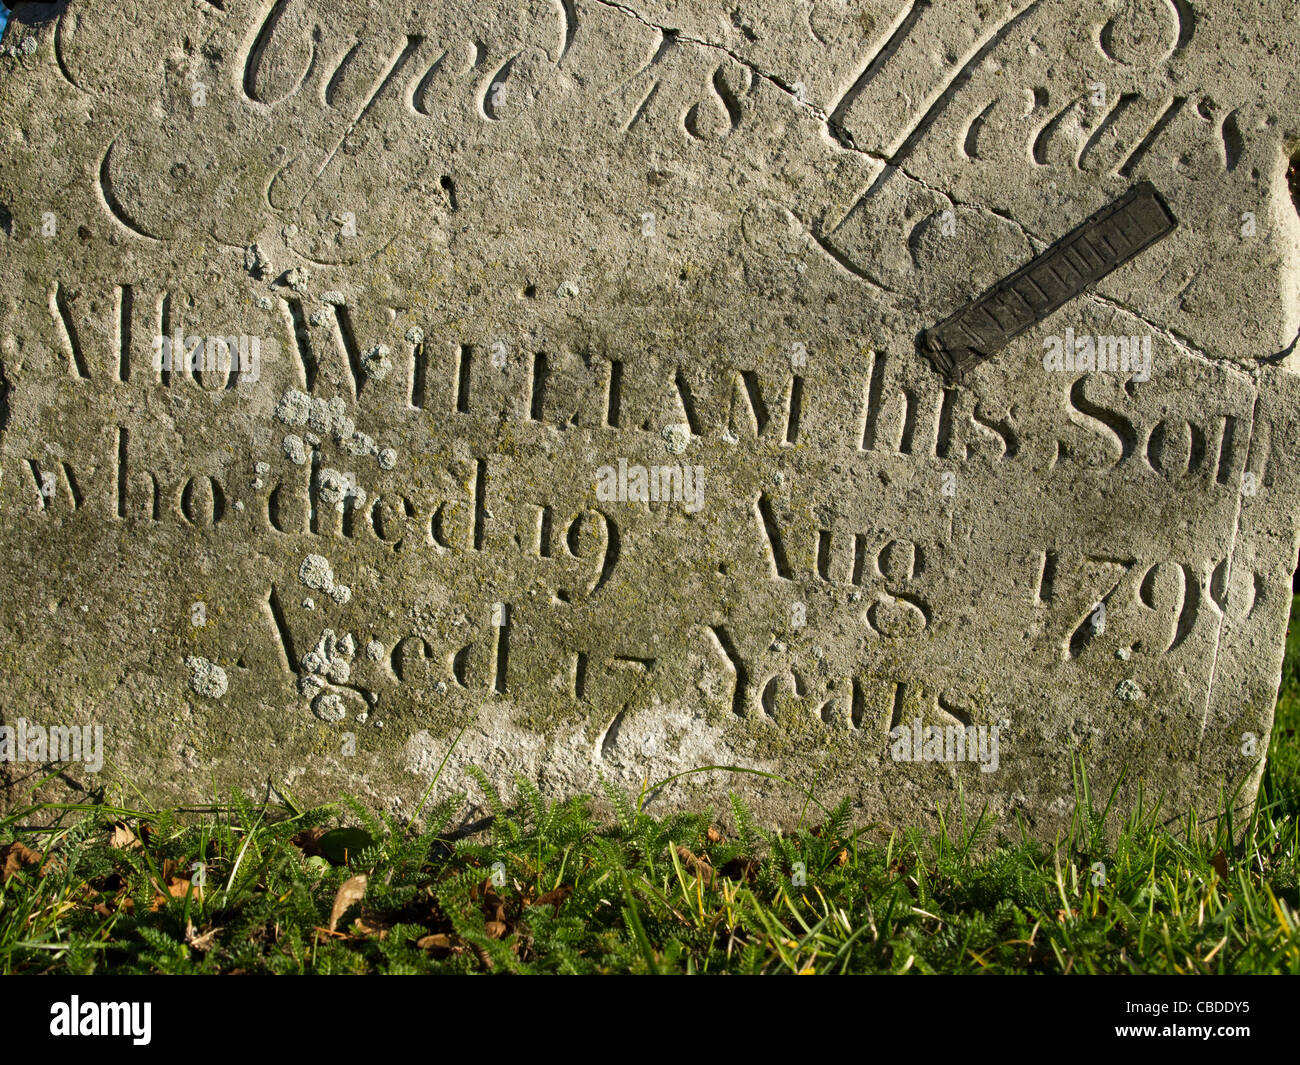 Une pierre tombale portant les mots "aussi William, son fils, qui est mort 19 août 1790 age 17 ans'. Banque D'Images